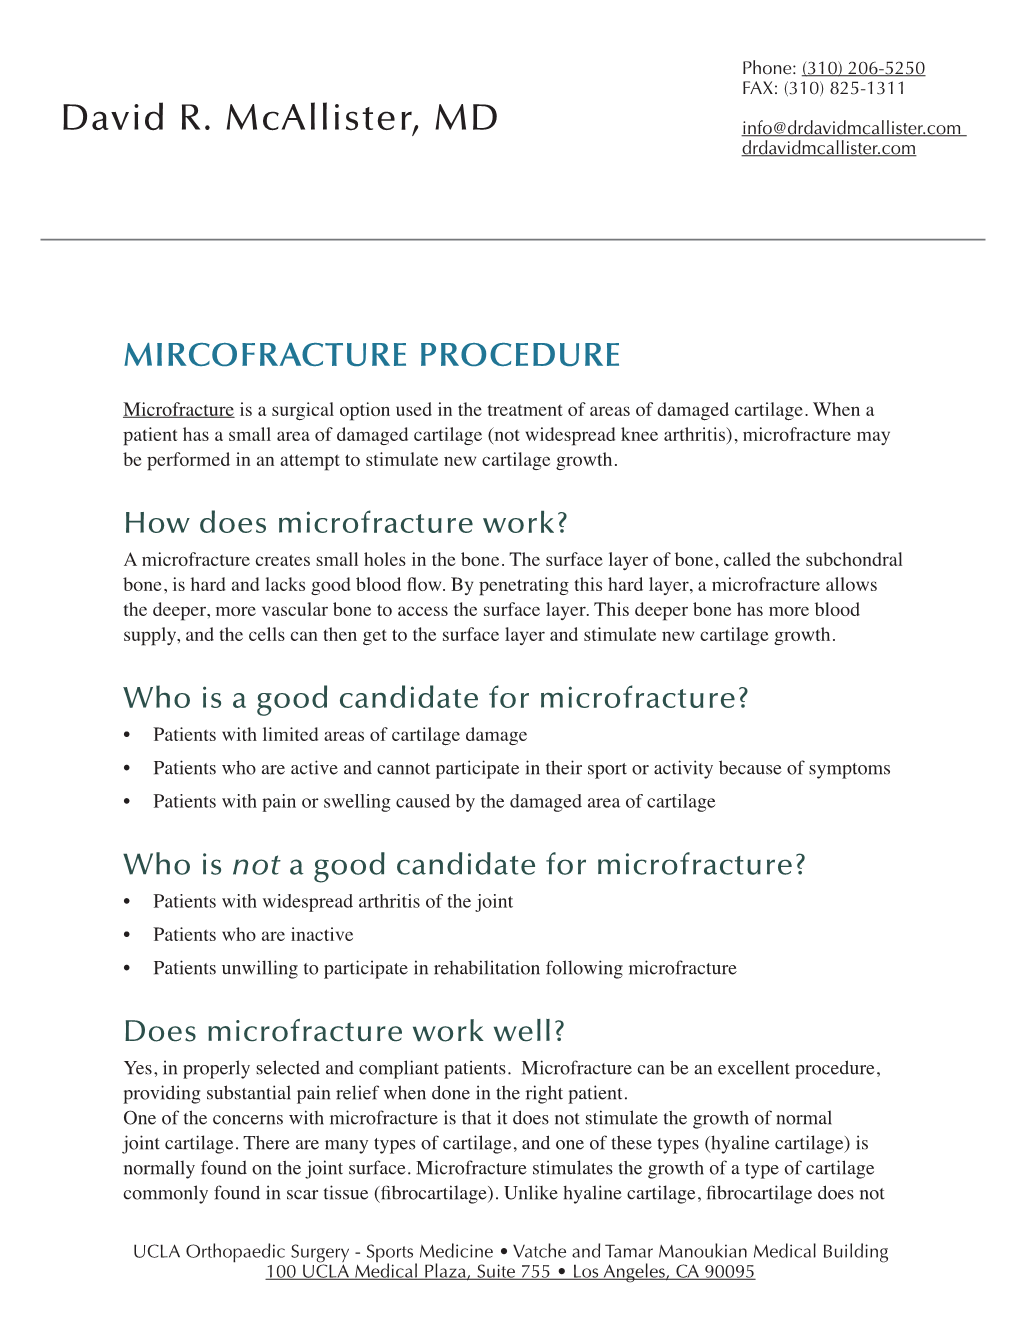 Knee Mircofracture Procedure Download